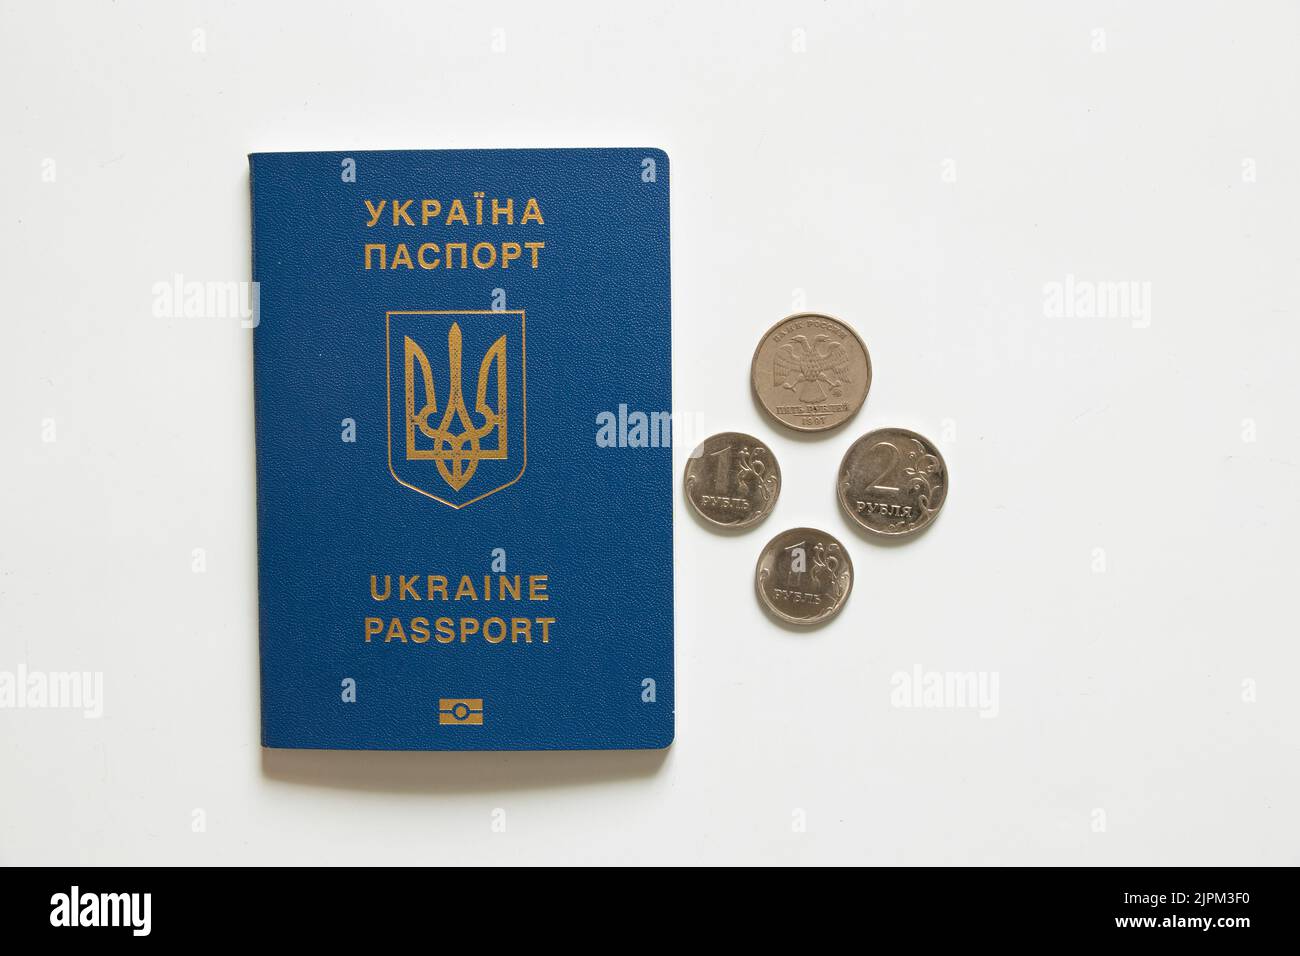 Passaporto ucraino straniero e rubli russi si trovano nelle vicinanze su uno sfondo bianco, economia e turismo, sanzioni in Russia 2022 Foto Stock